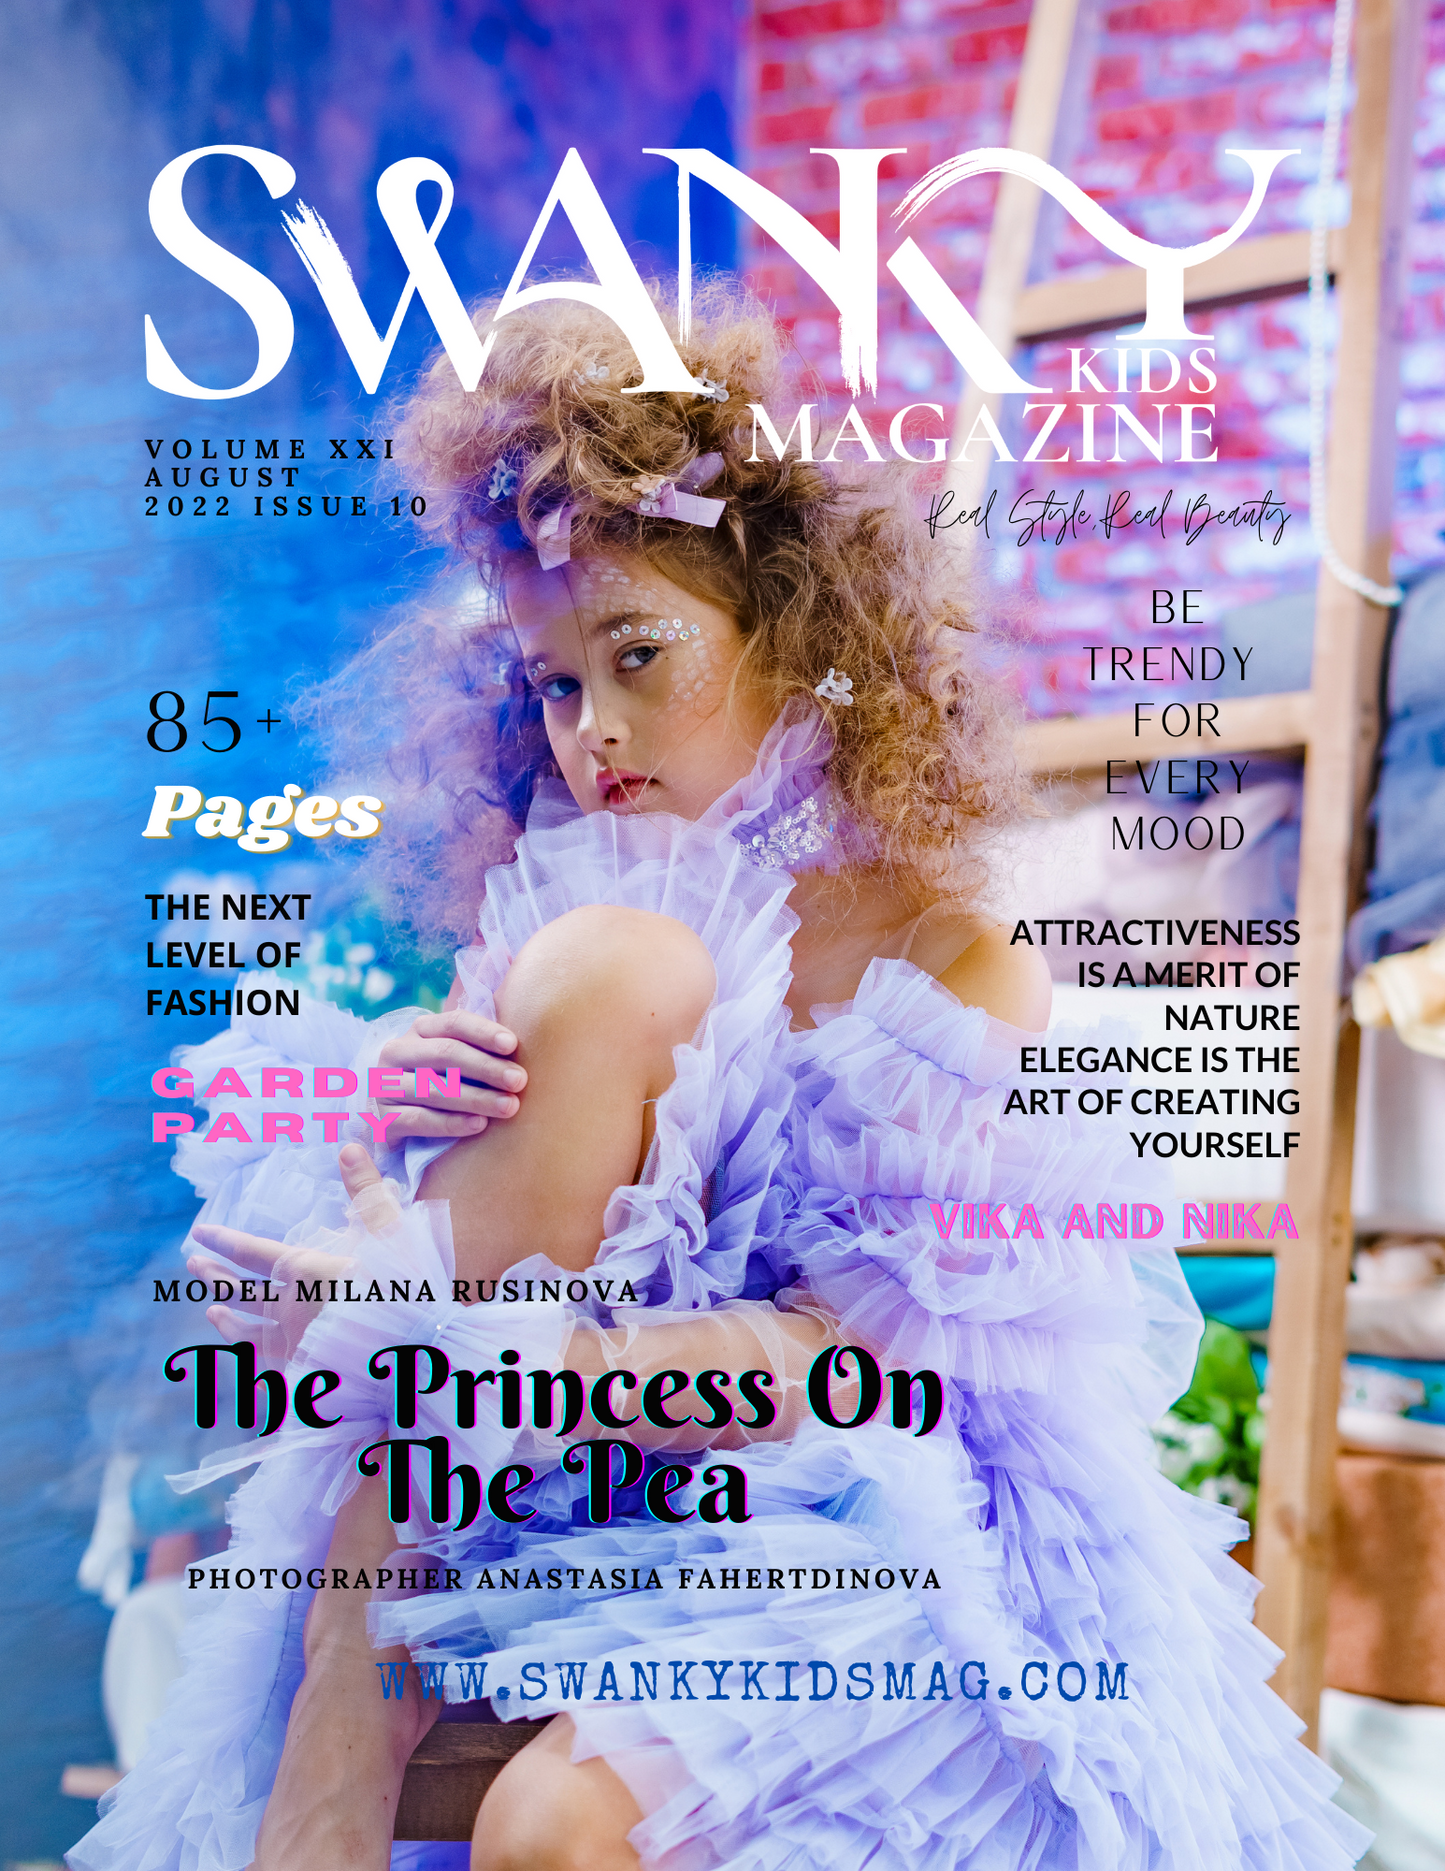 Swanky Kids Magazine AUGUST 2022 VOL XXI Issue 10